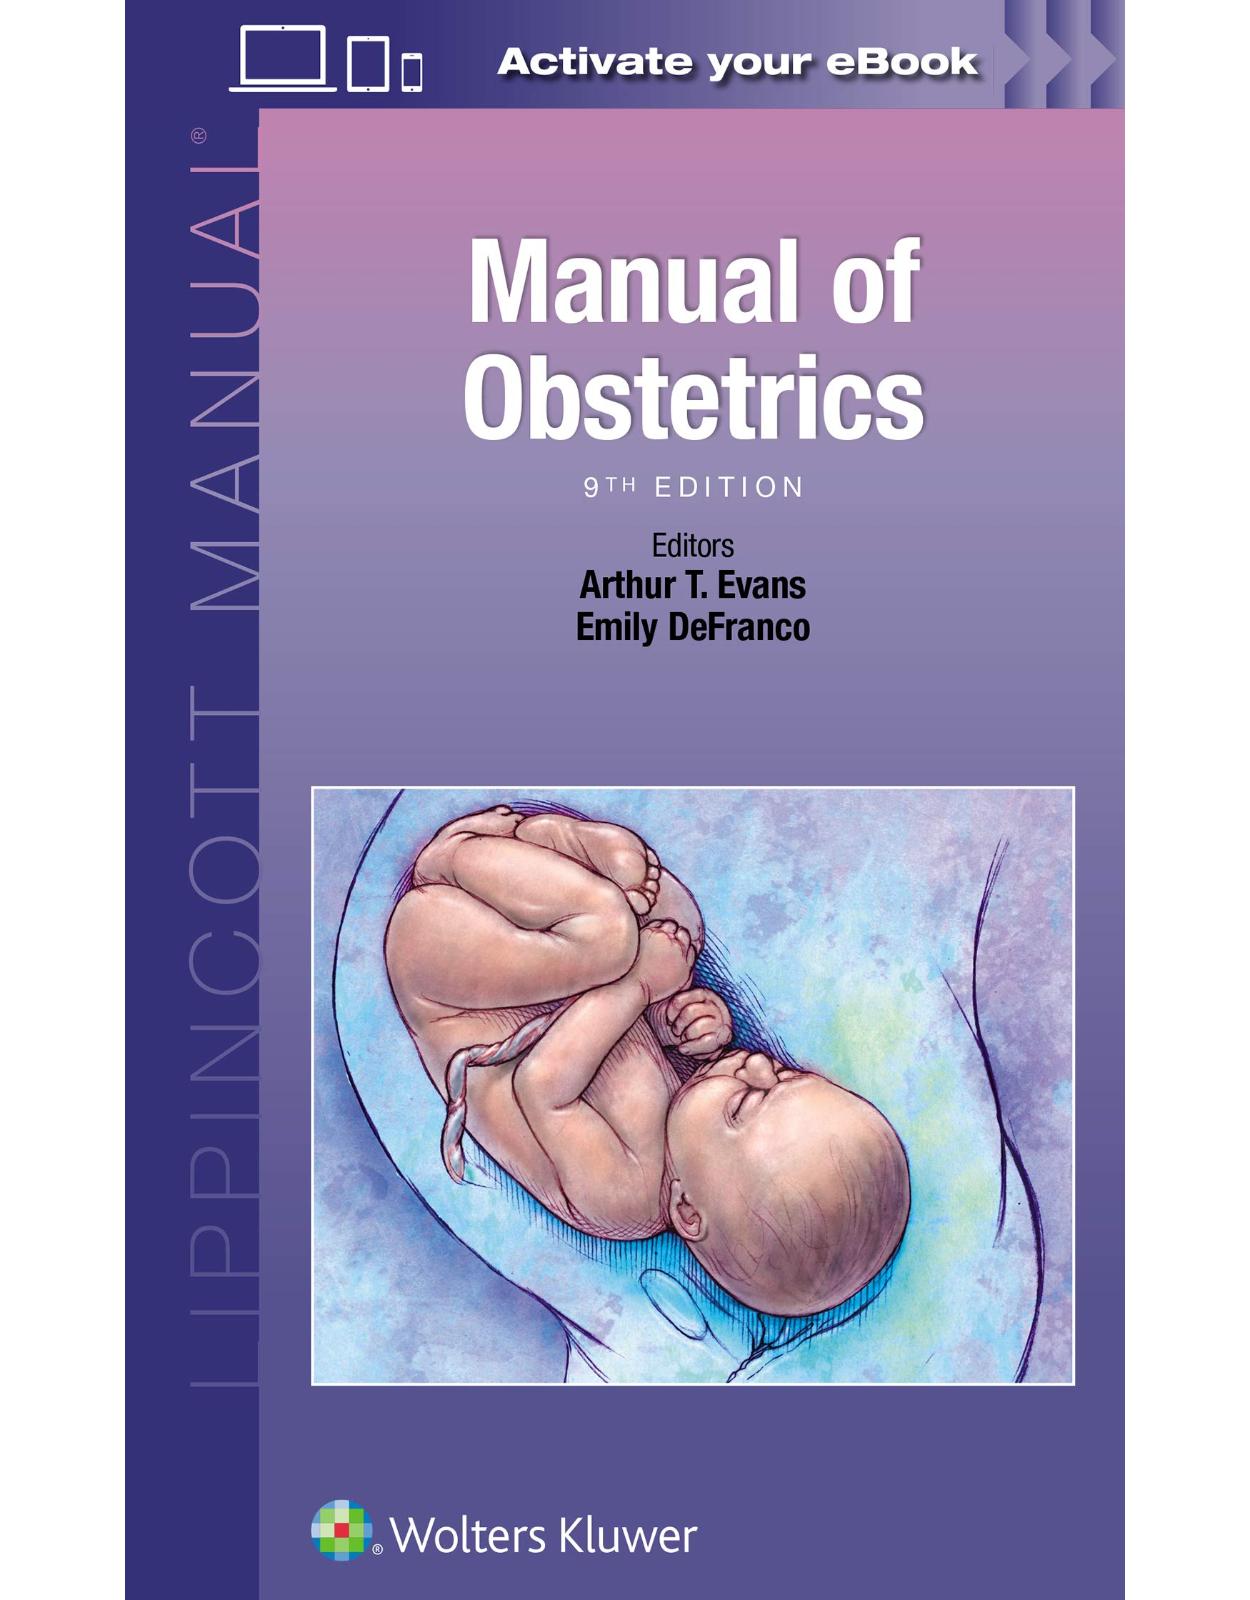 Manual of Obstetrics (Lippincott Manual) 